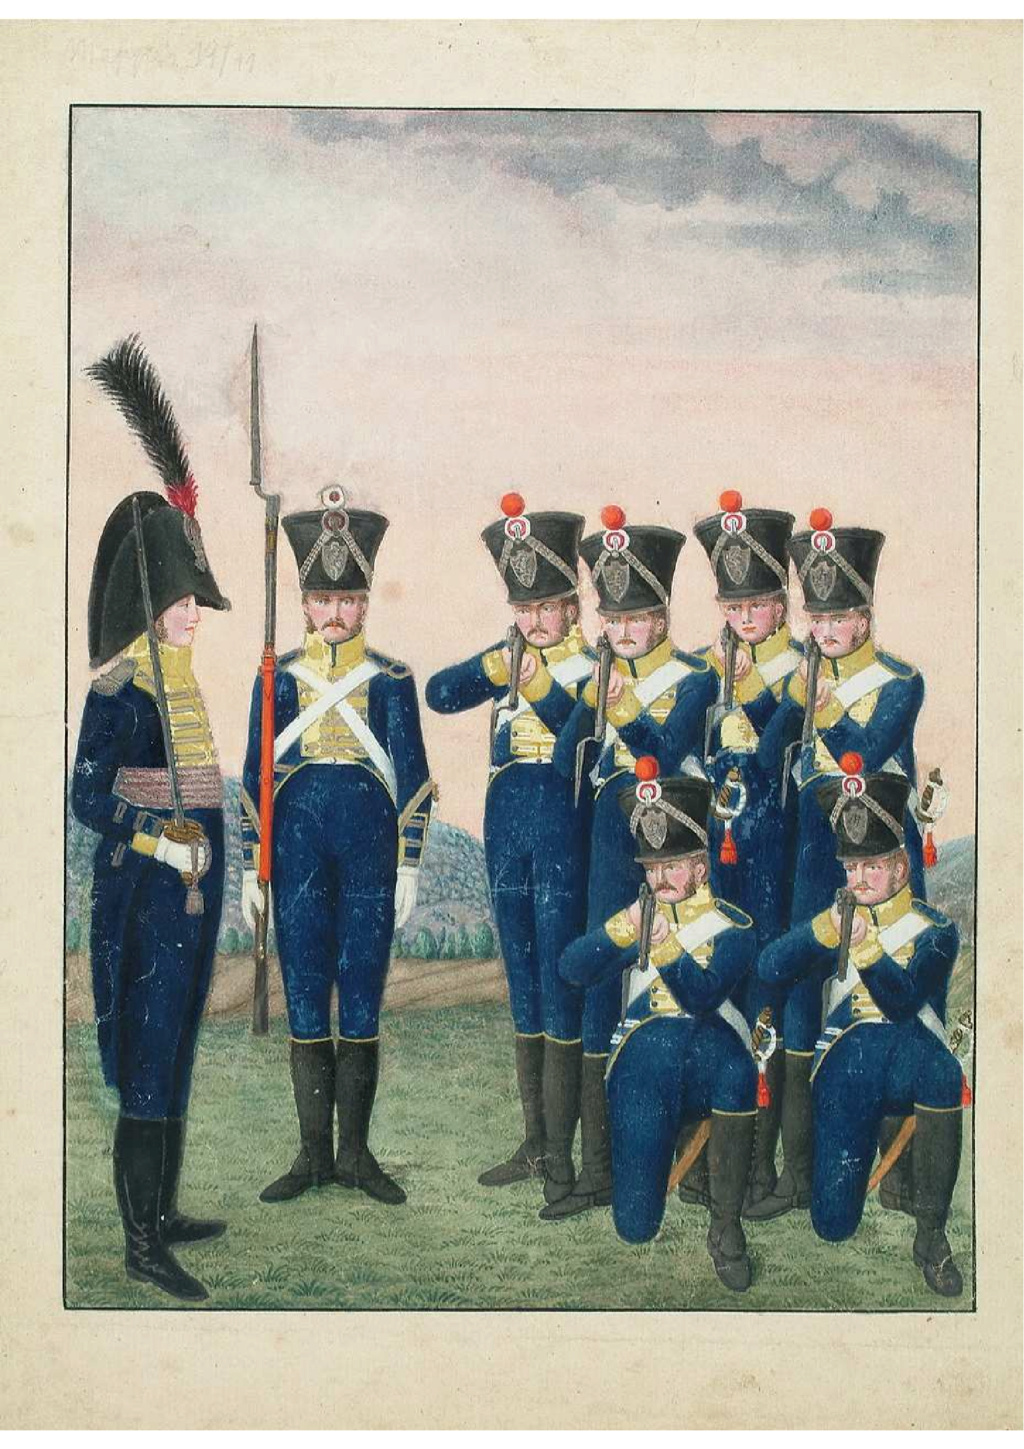 recherche informations sur infanterie HESSE DARMSTADT 1815 - Page 3 Rzogim29